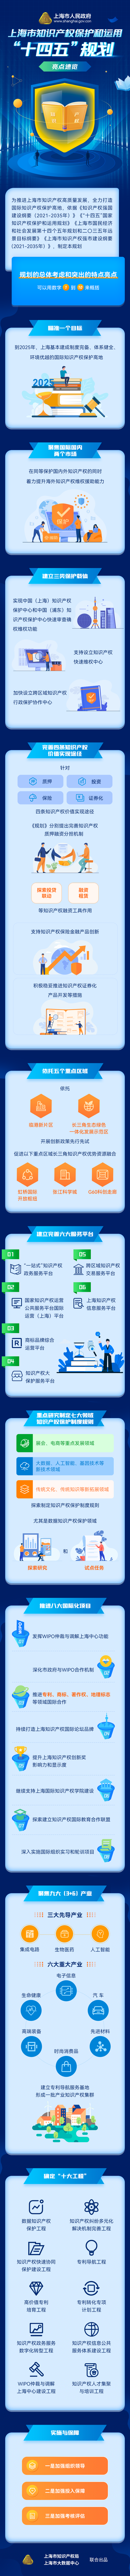 《上海市知识产权保护和运用“十四五”规划》亮点速览.png